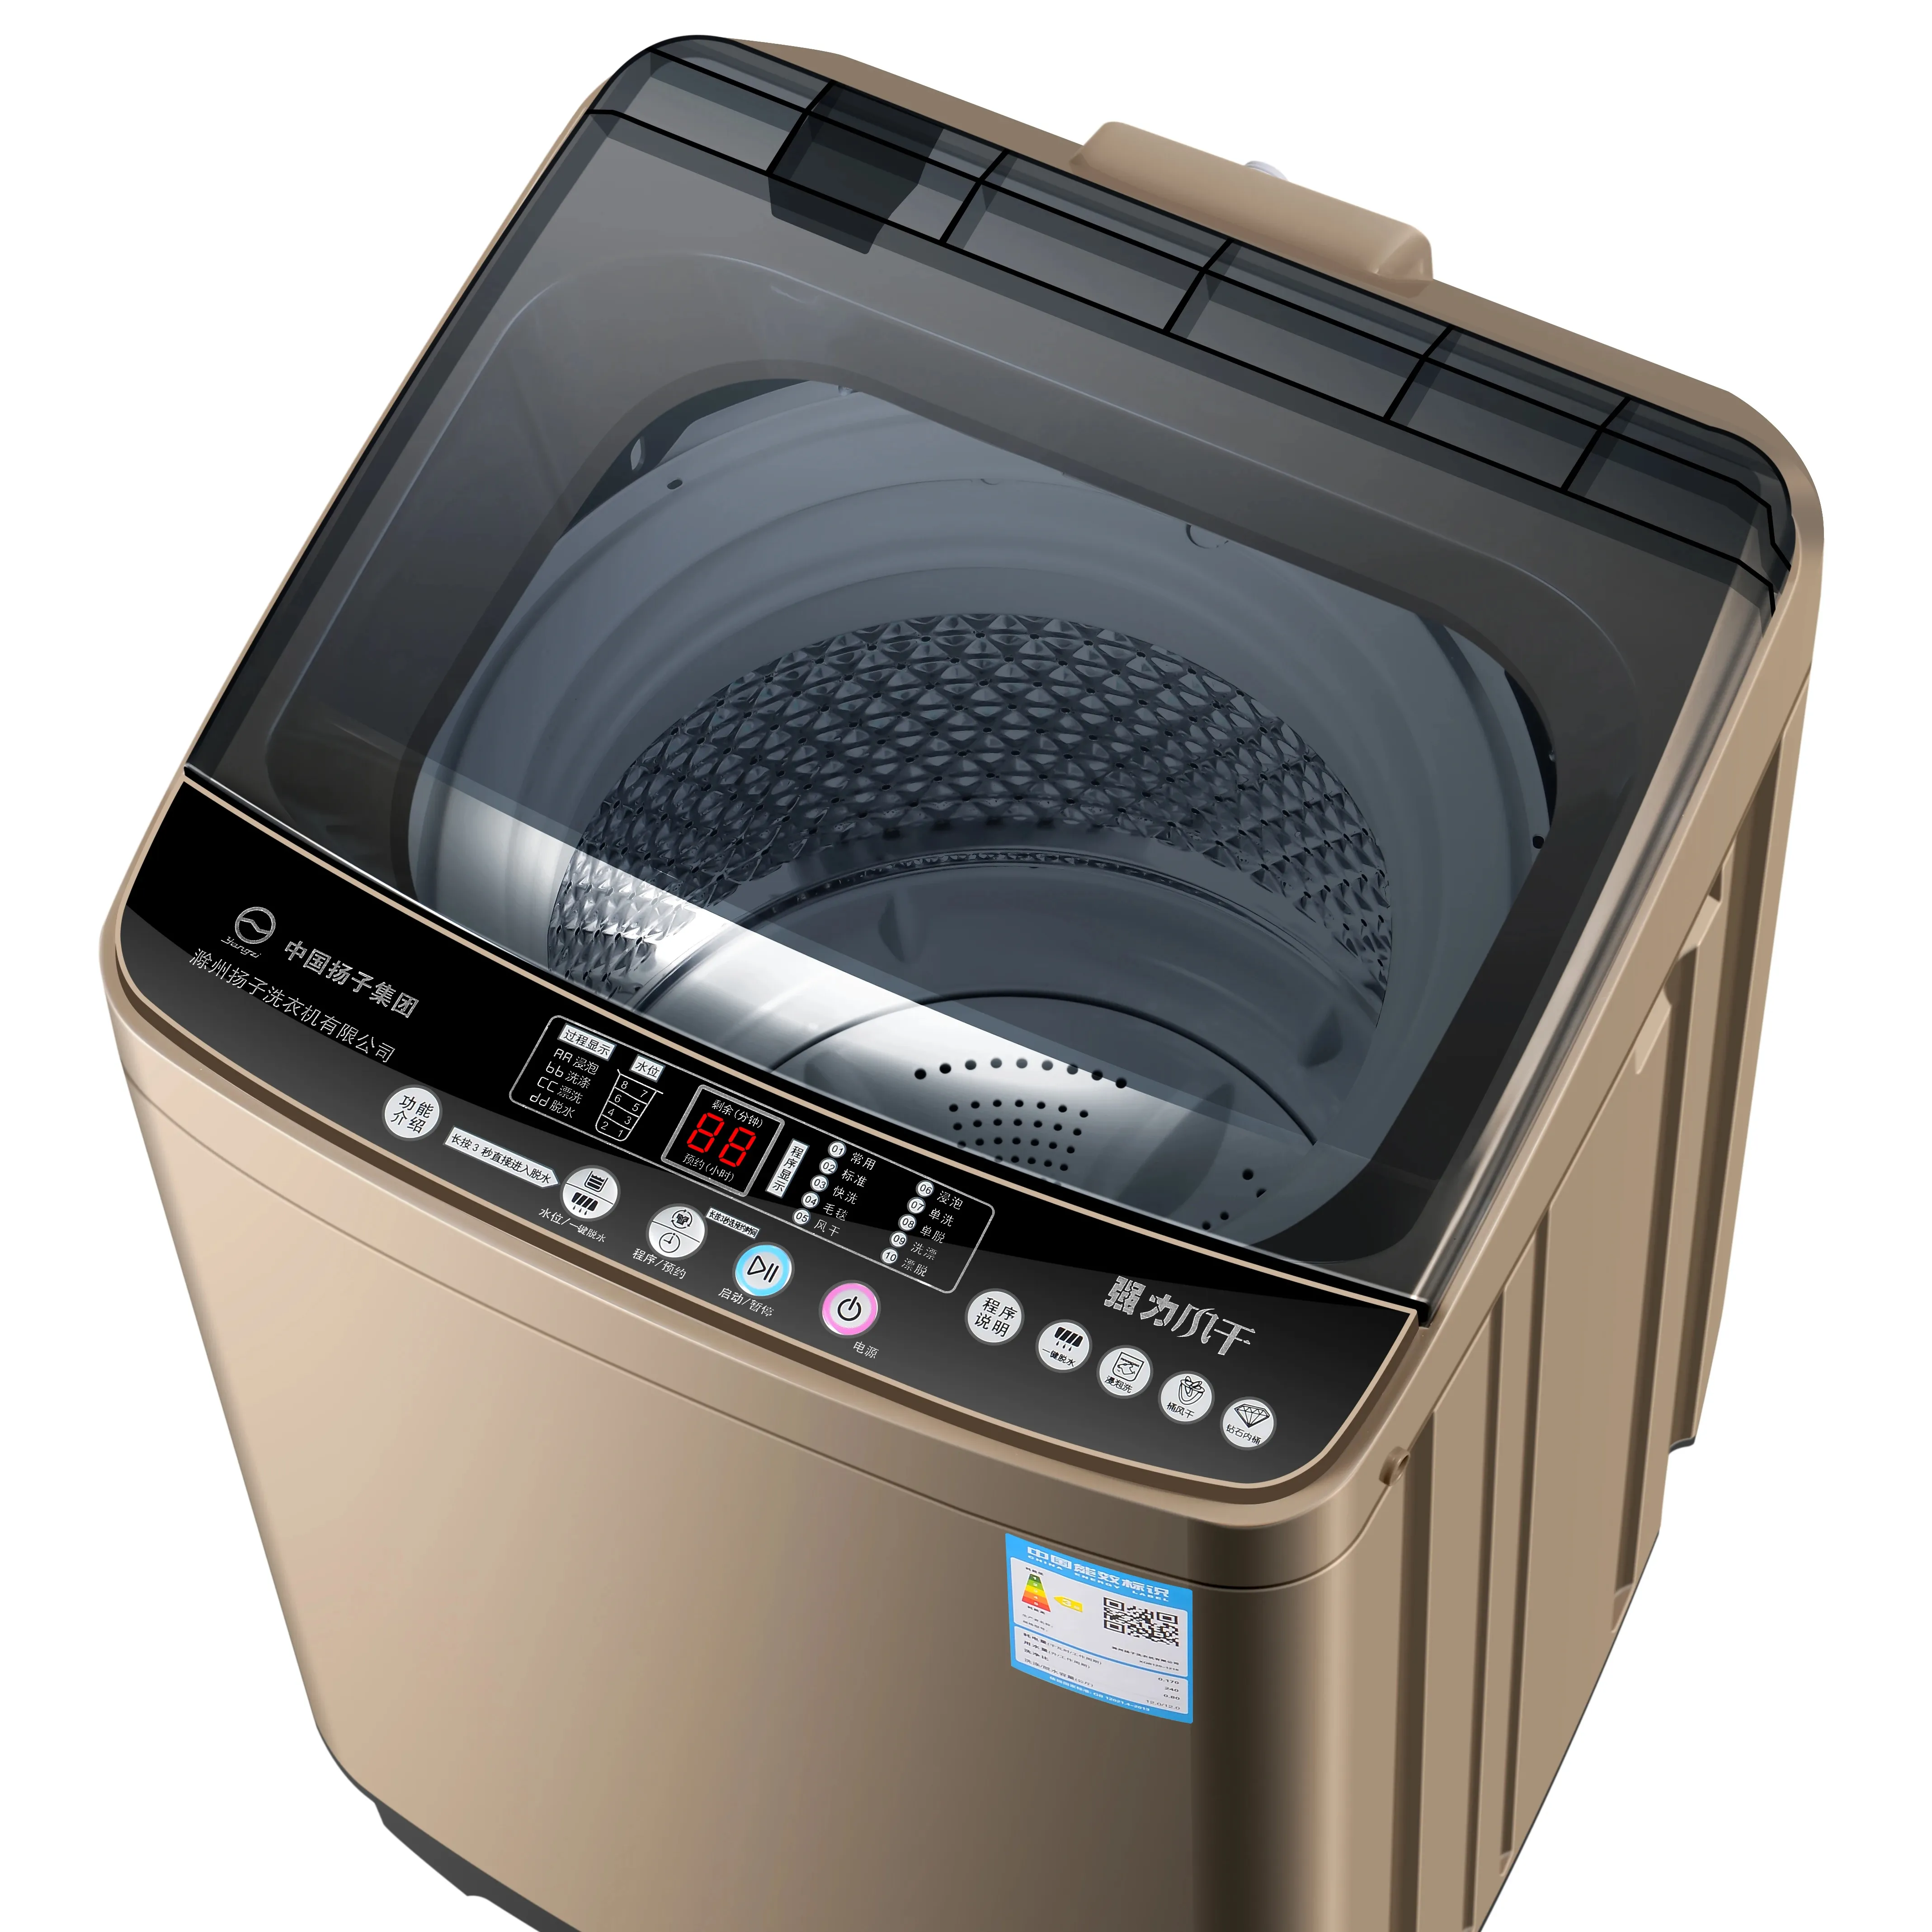 Plastik kapak üst yük yıkayıcılar tam otomatik akıllı çamaşır makineleri ile 8 kg All-in-one yıkayıcı/kurutma çamaşır makinesi